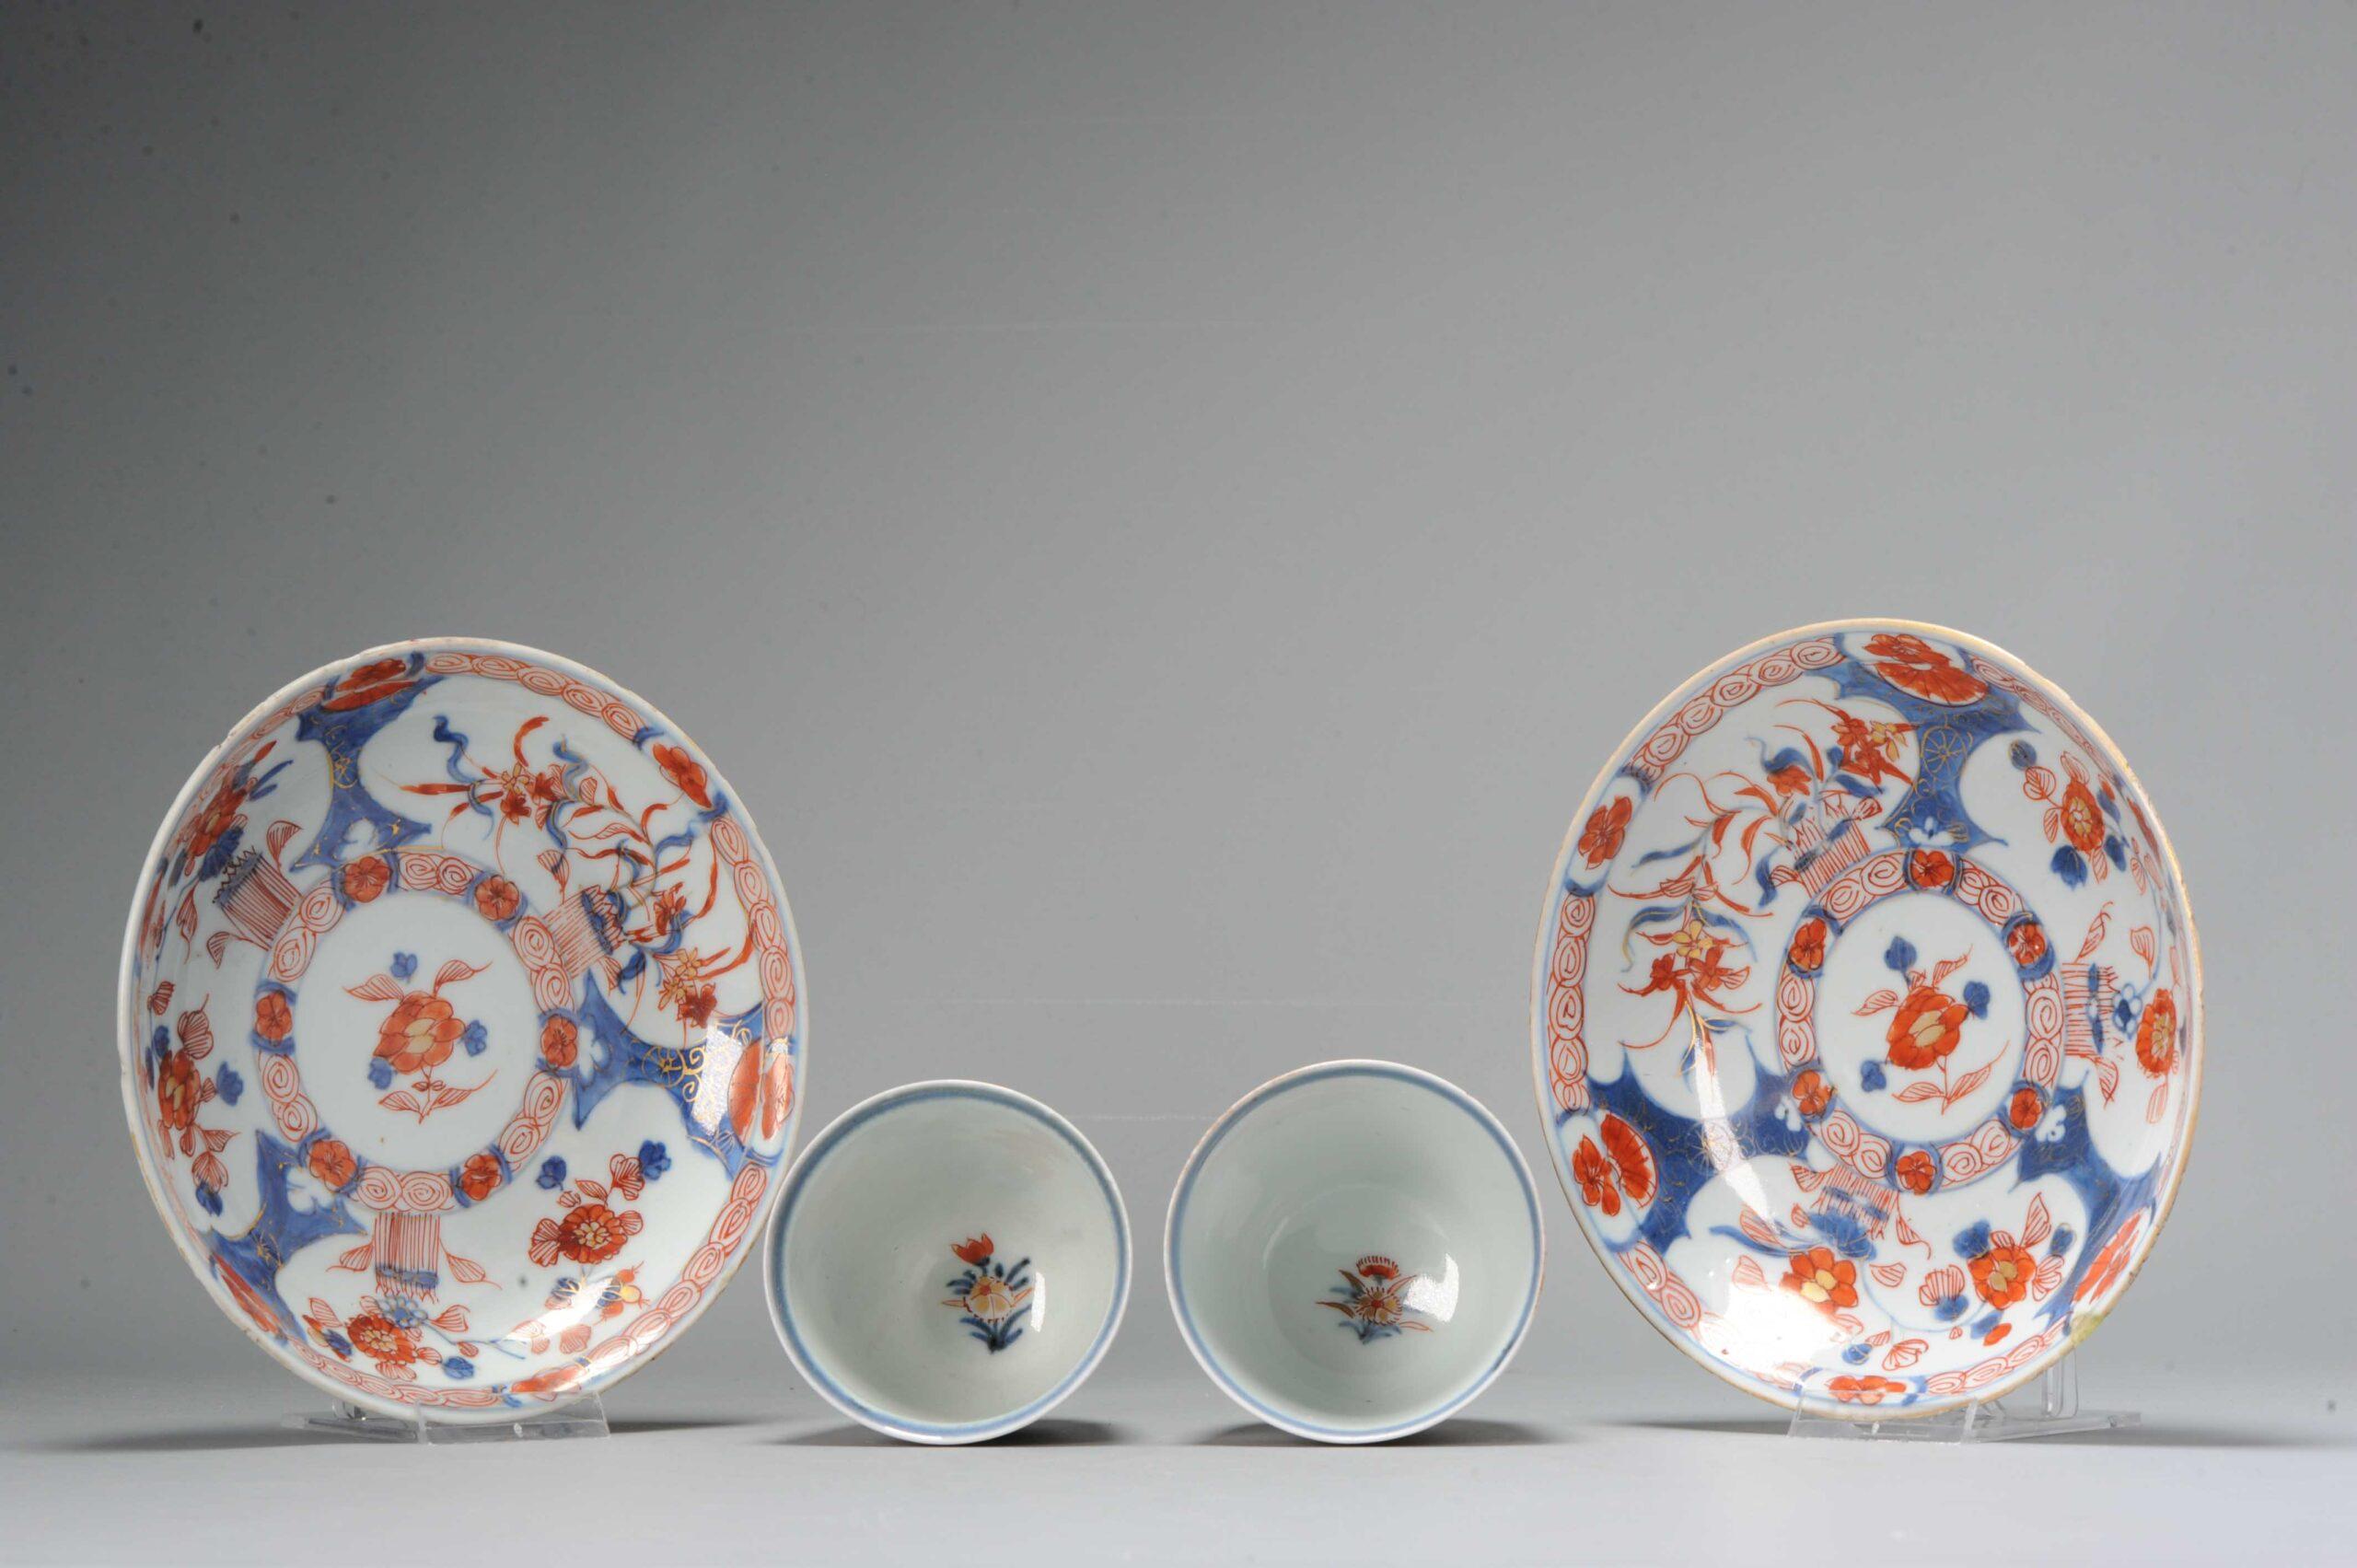 Très beaux exemples de l'époque d'Edo, 18e siècle
Paire de bols à thé / tasses à chocolat Imari.

Informations complémentaires :
MATERIAL : Porcelaine et poterie
Type : Boire du thé/café : Bols, tasses et théières
Style japonais : Imari
Région